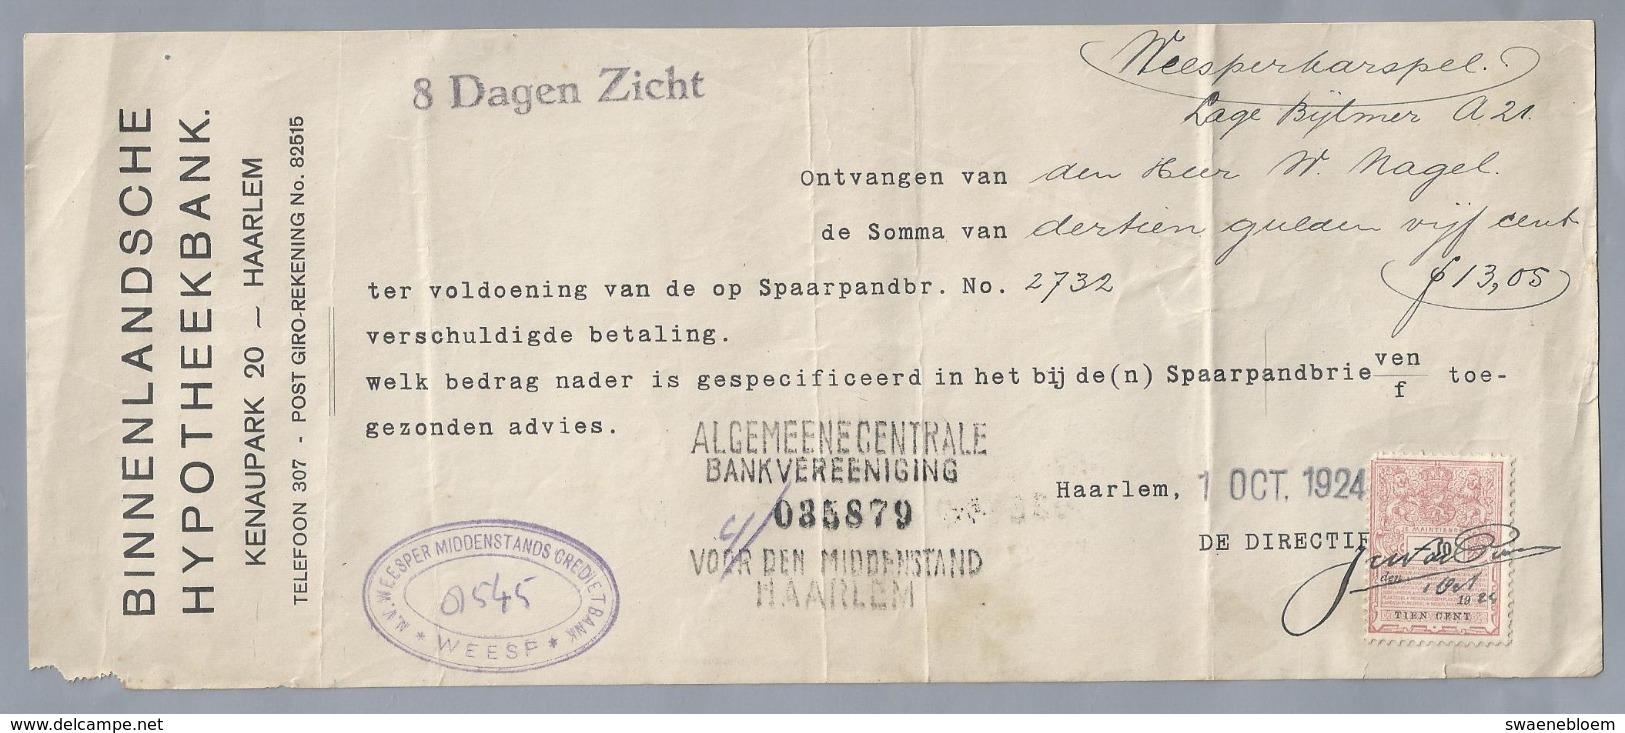 NL.- Betaal Bewijs Van De BINNENLANDSCHE HYPOTHEEKBANK. KENAUPARK 20 HAARLEM. 1 OCT 1924. - Pays-Bas